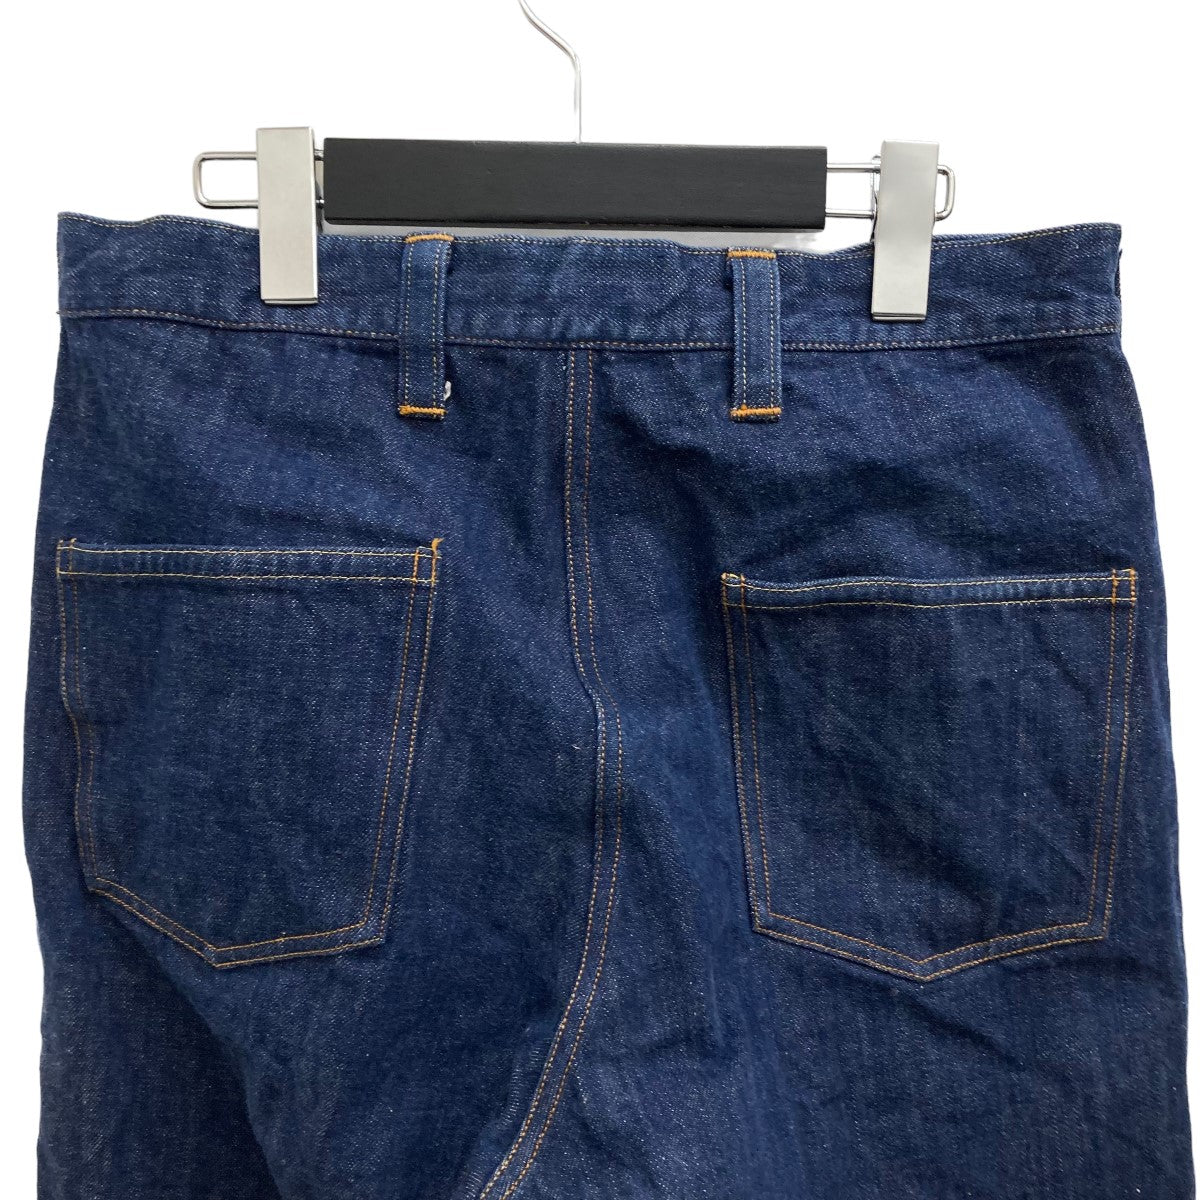 9,750円Kaval Straight denim pants デニムパンツ